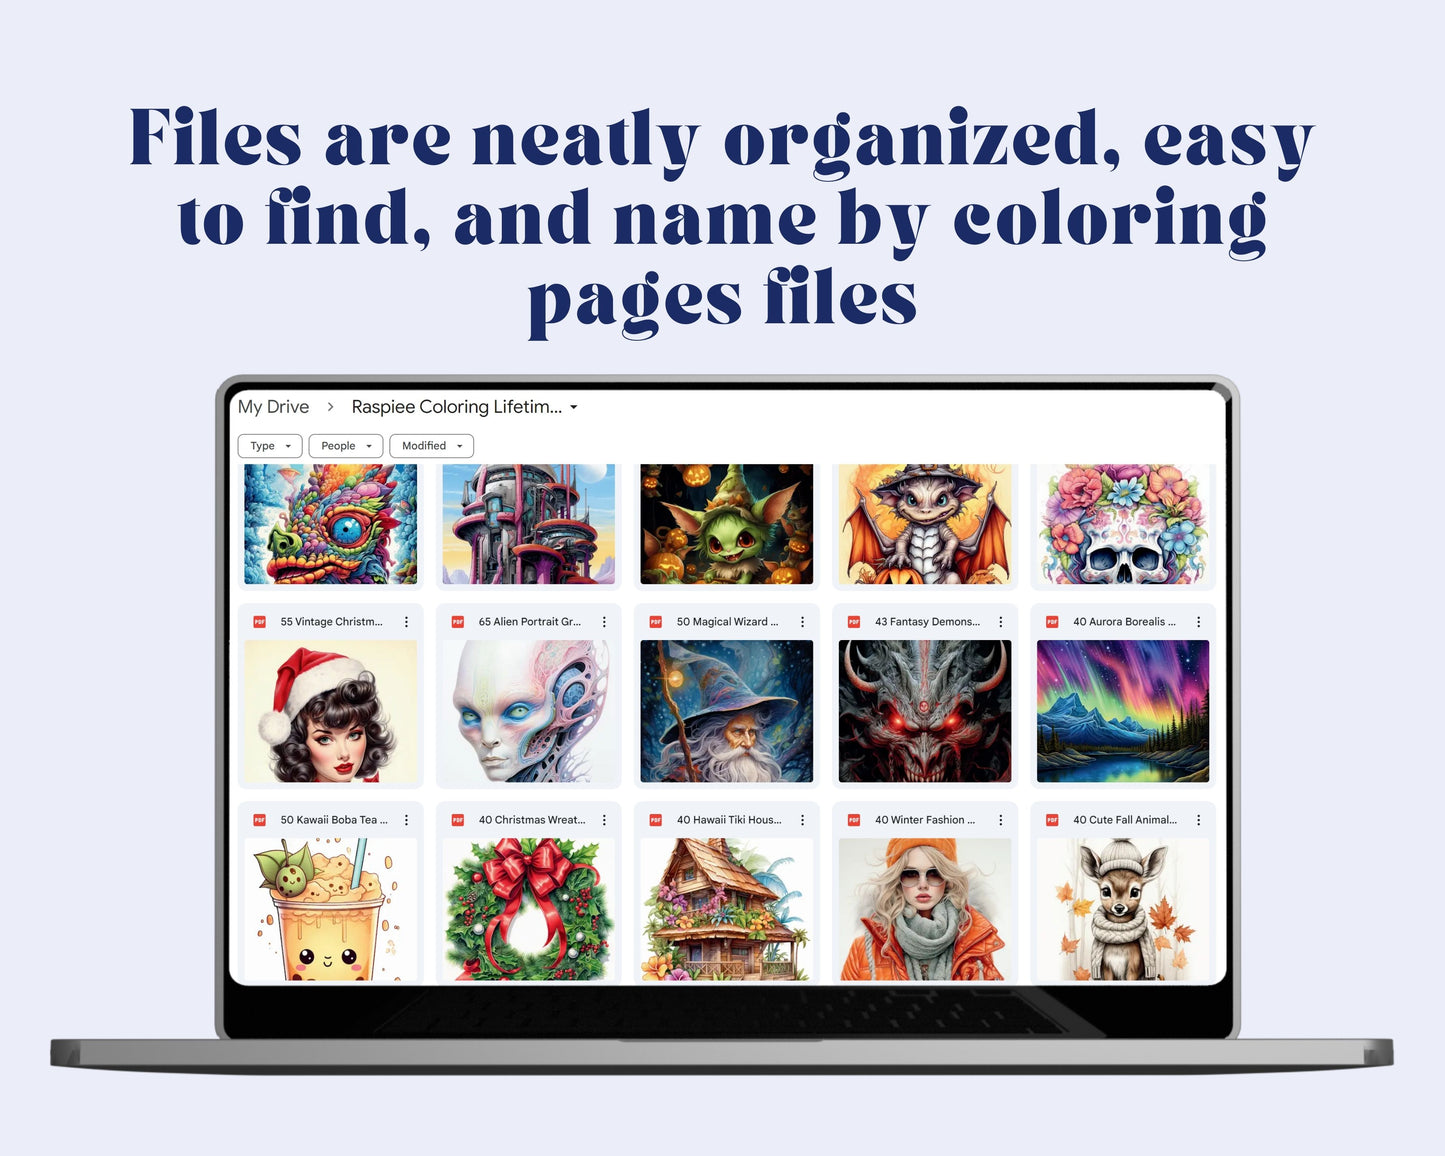 Adult Coloring Pages Entire Whole Shop Bundle Over 30,000+ Designs Lifetime Access